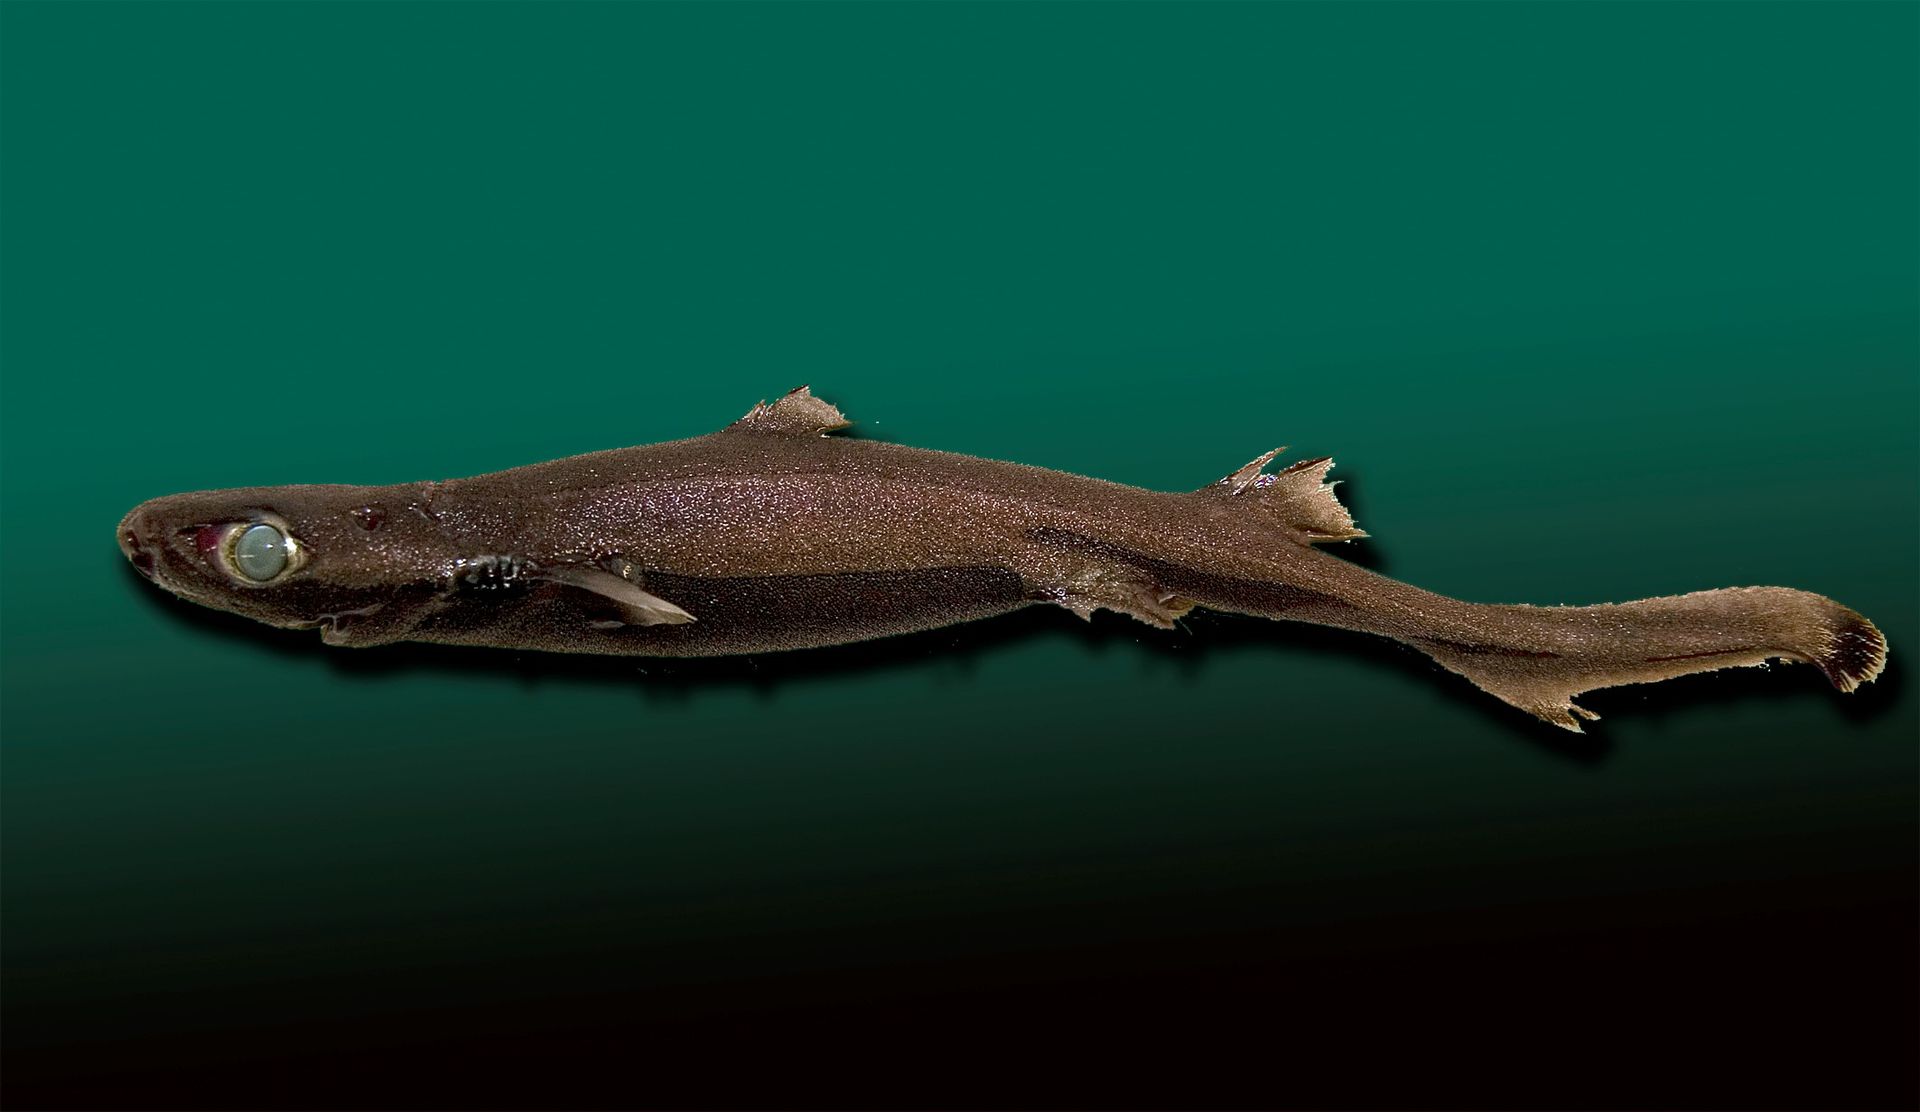 Etmopterus spinax: Individu de l'espèce de requin lanterne utilisé comme espèce modèle pour l'étude de la bioluminescence chez les requins. Cette espèce de requin lumineux mesure entre 24 et 41 cm à l’âge adulte